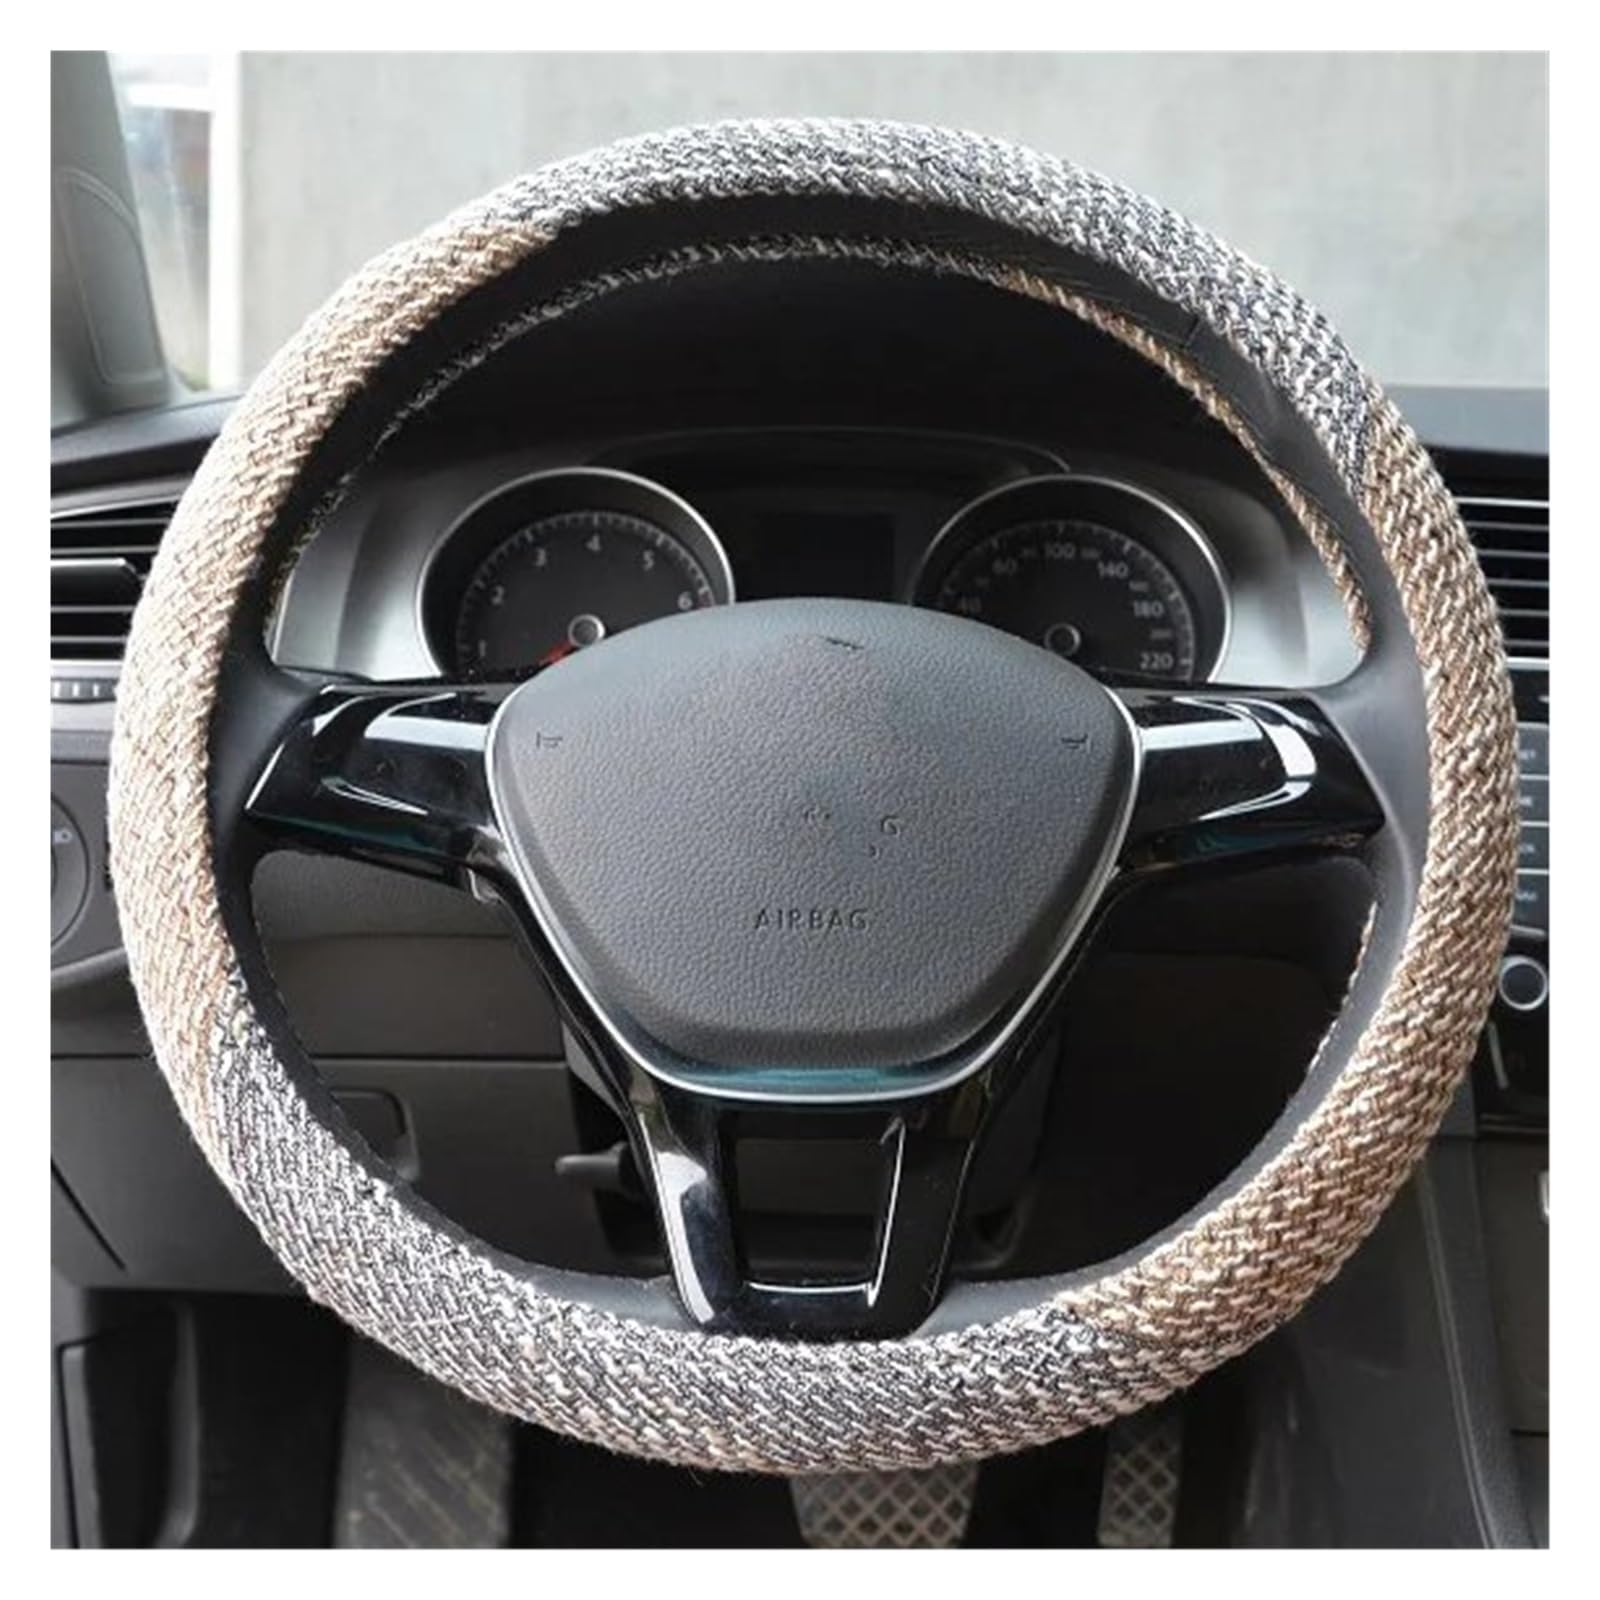 Steering Wheel Cover Auto Lenkradbezug Flachsstoff Dicker Angenehm Anzufassen rutschfest Größe M Passend Für 14-15 Zoll Lenkrad Für Alle Jahreszeiten Lenkradabdeckung(Beige) von CRUBVQQ